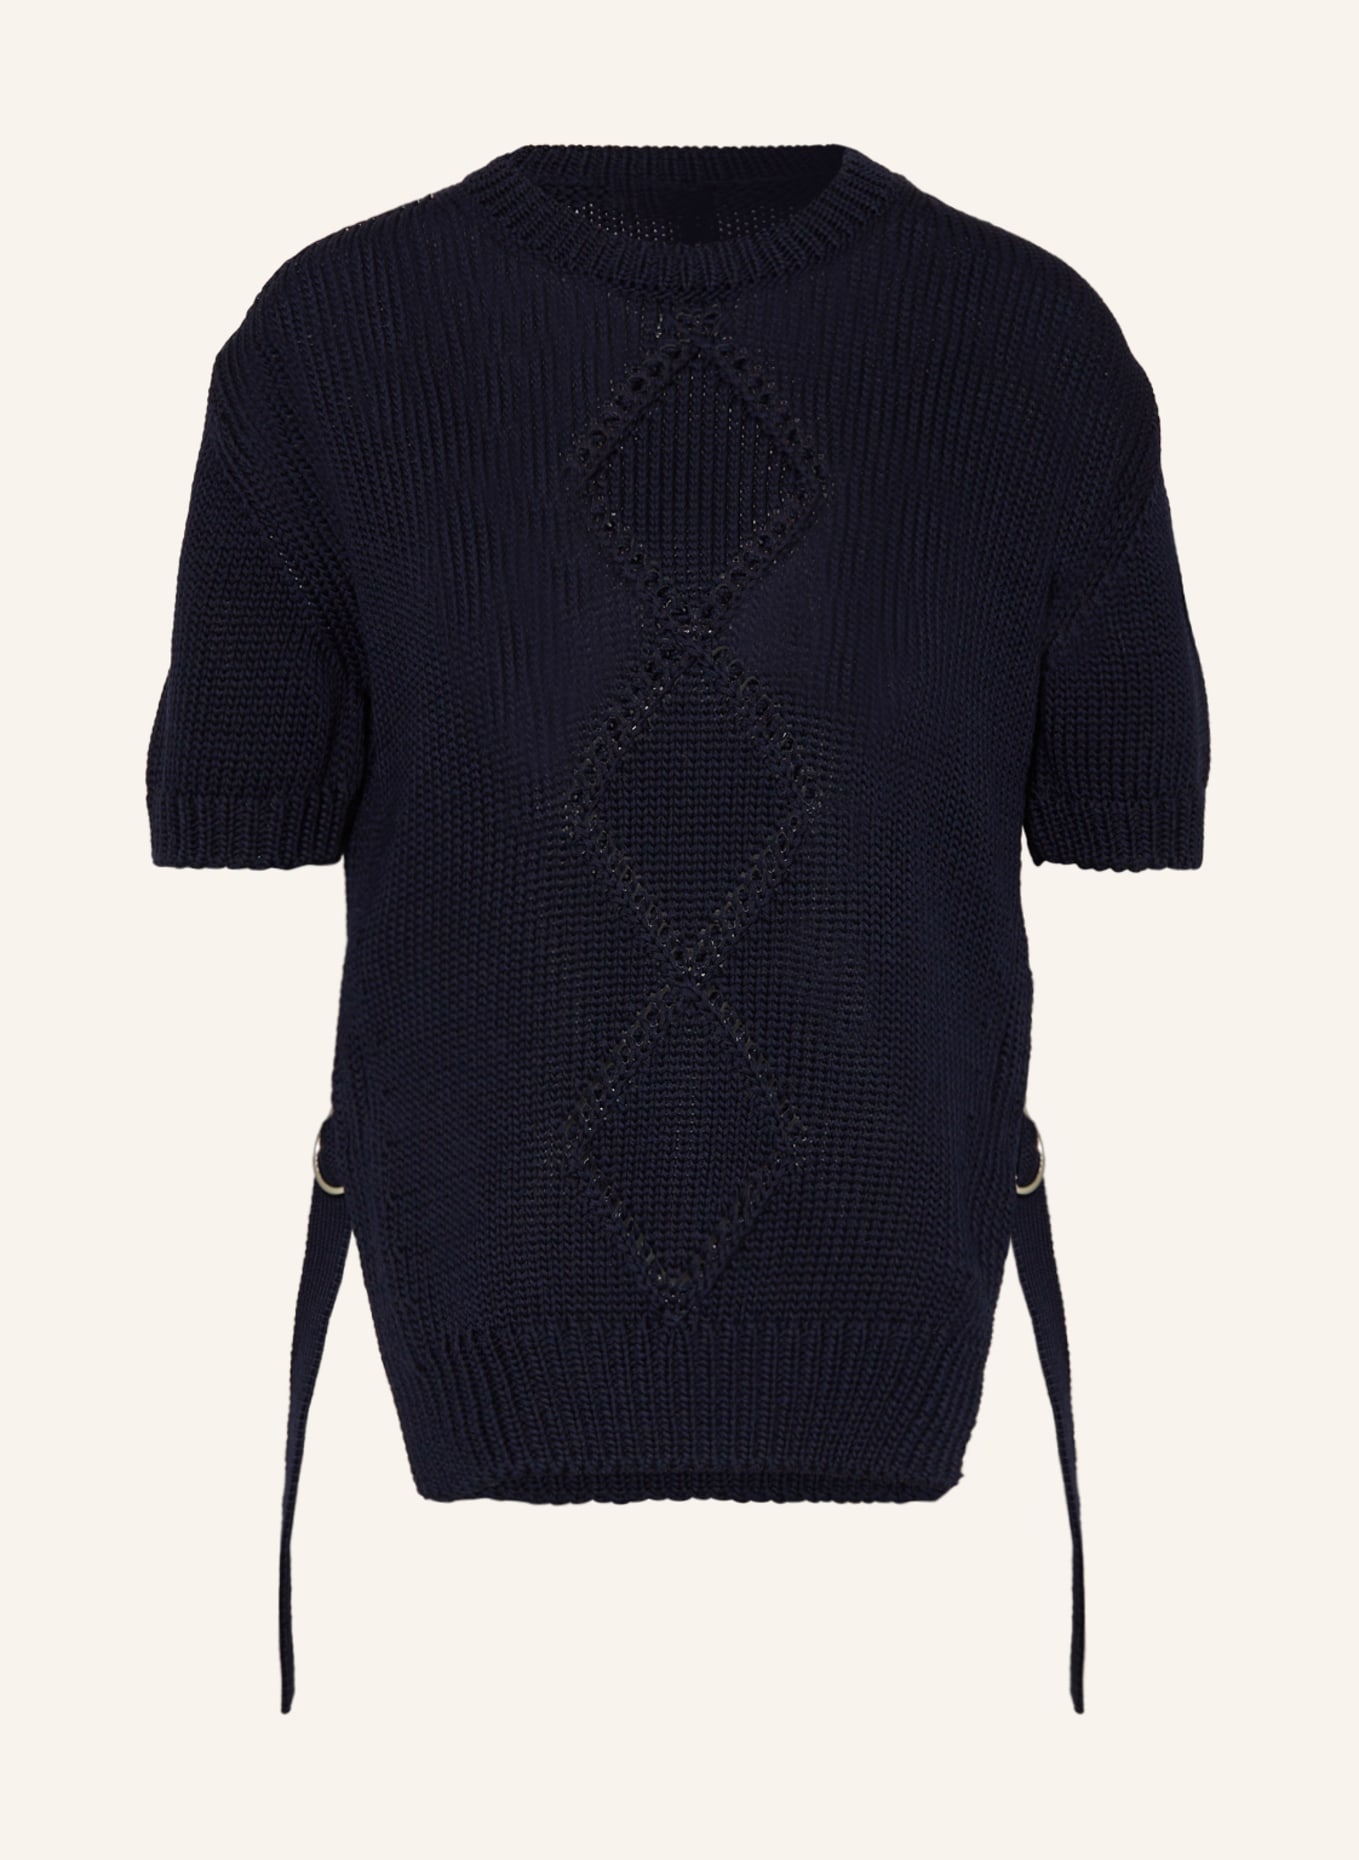 MONCLER Pullover, Farbe: DUNKELBLAU (Bild 1)